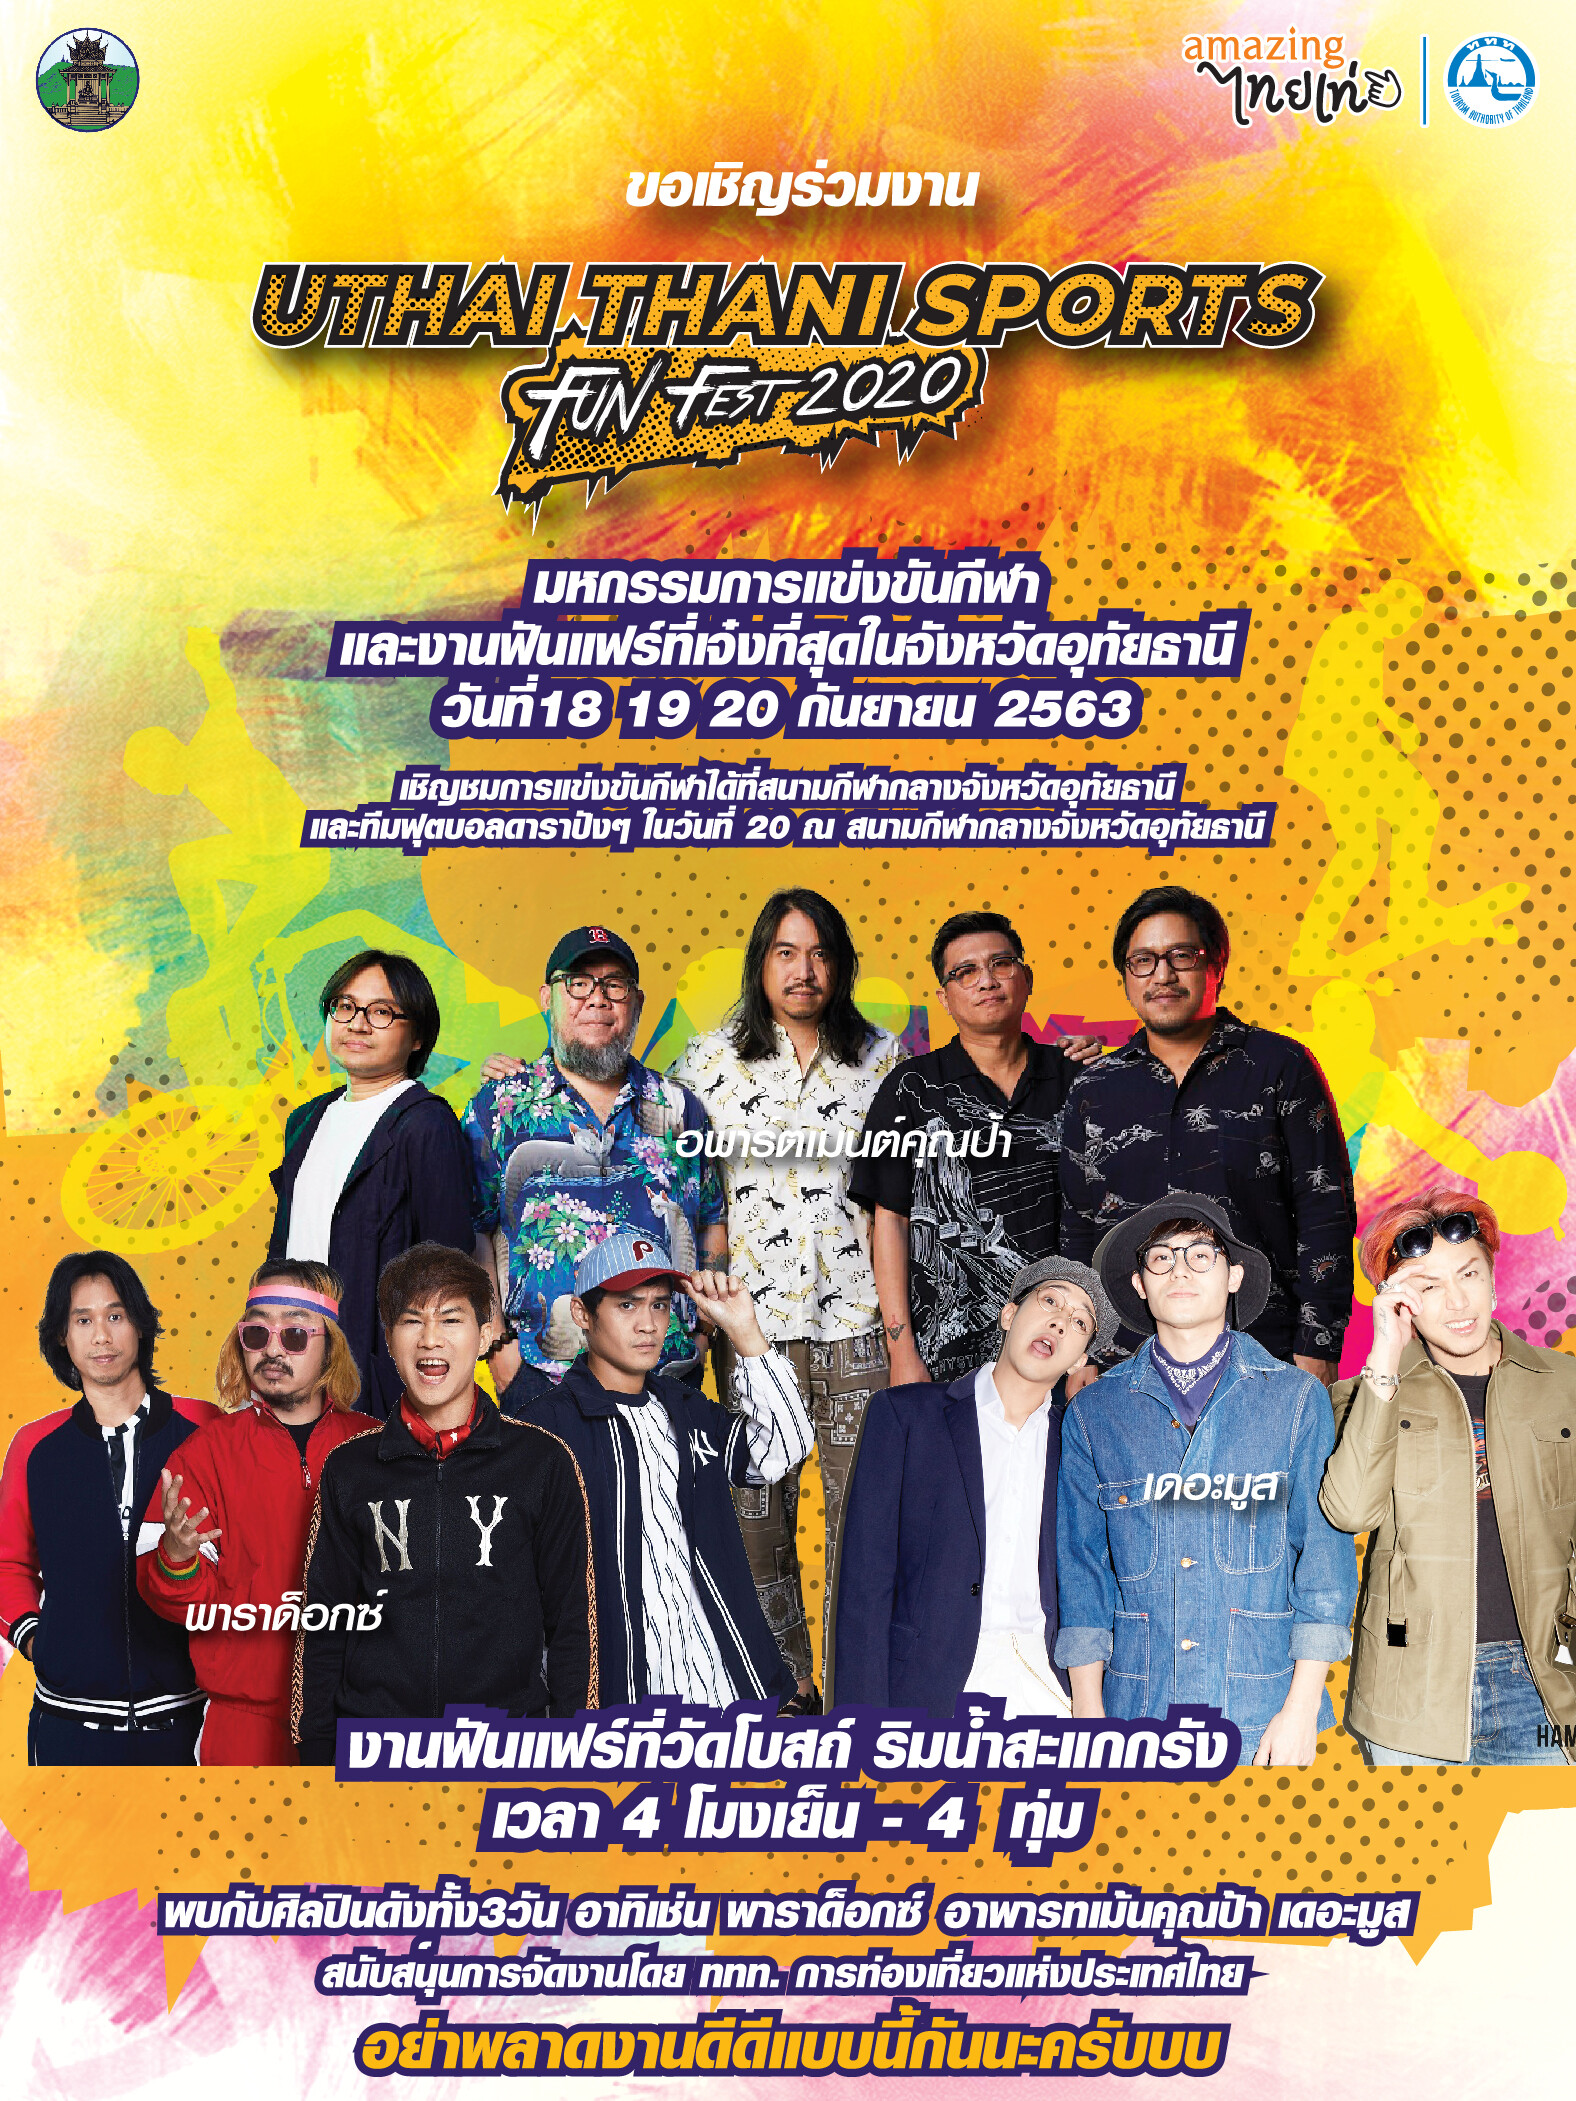 เชิญเที่ยวงาน "Uthai Thani Sports Fun Fest 2020" วันที่ 18 - 20 กันยายน 2563 ณ สนามกีฬาจังหวัด และลานสะแกกรัง อำเภอเมือง จังหวัดอุทัยธานี